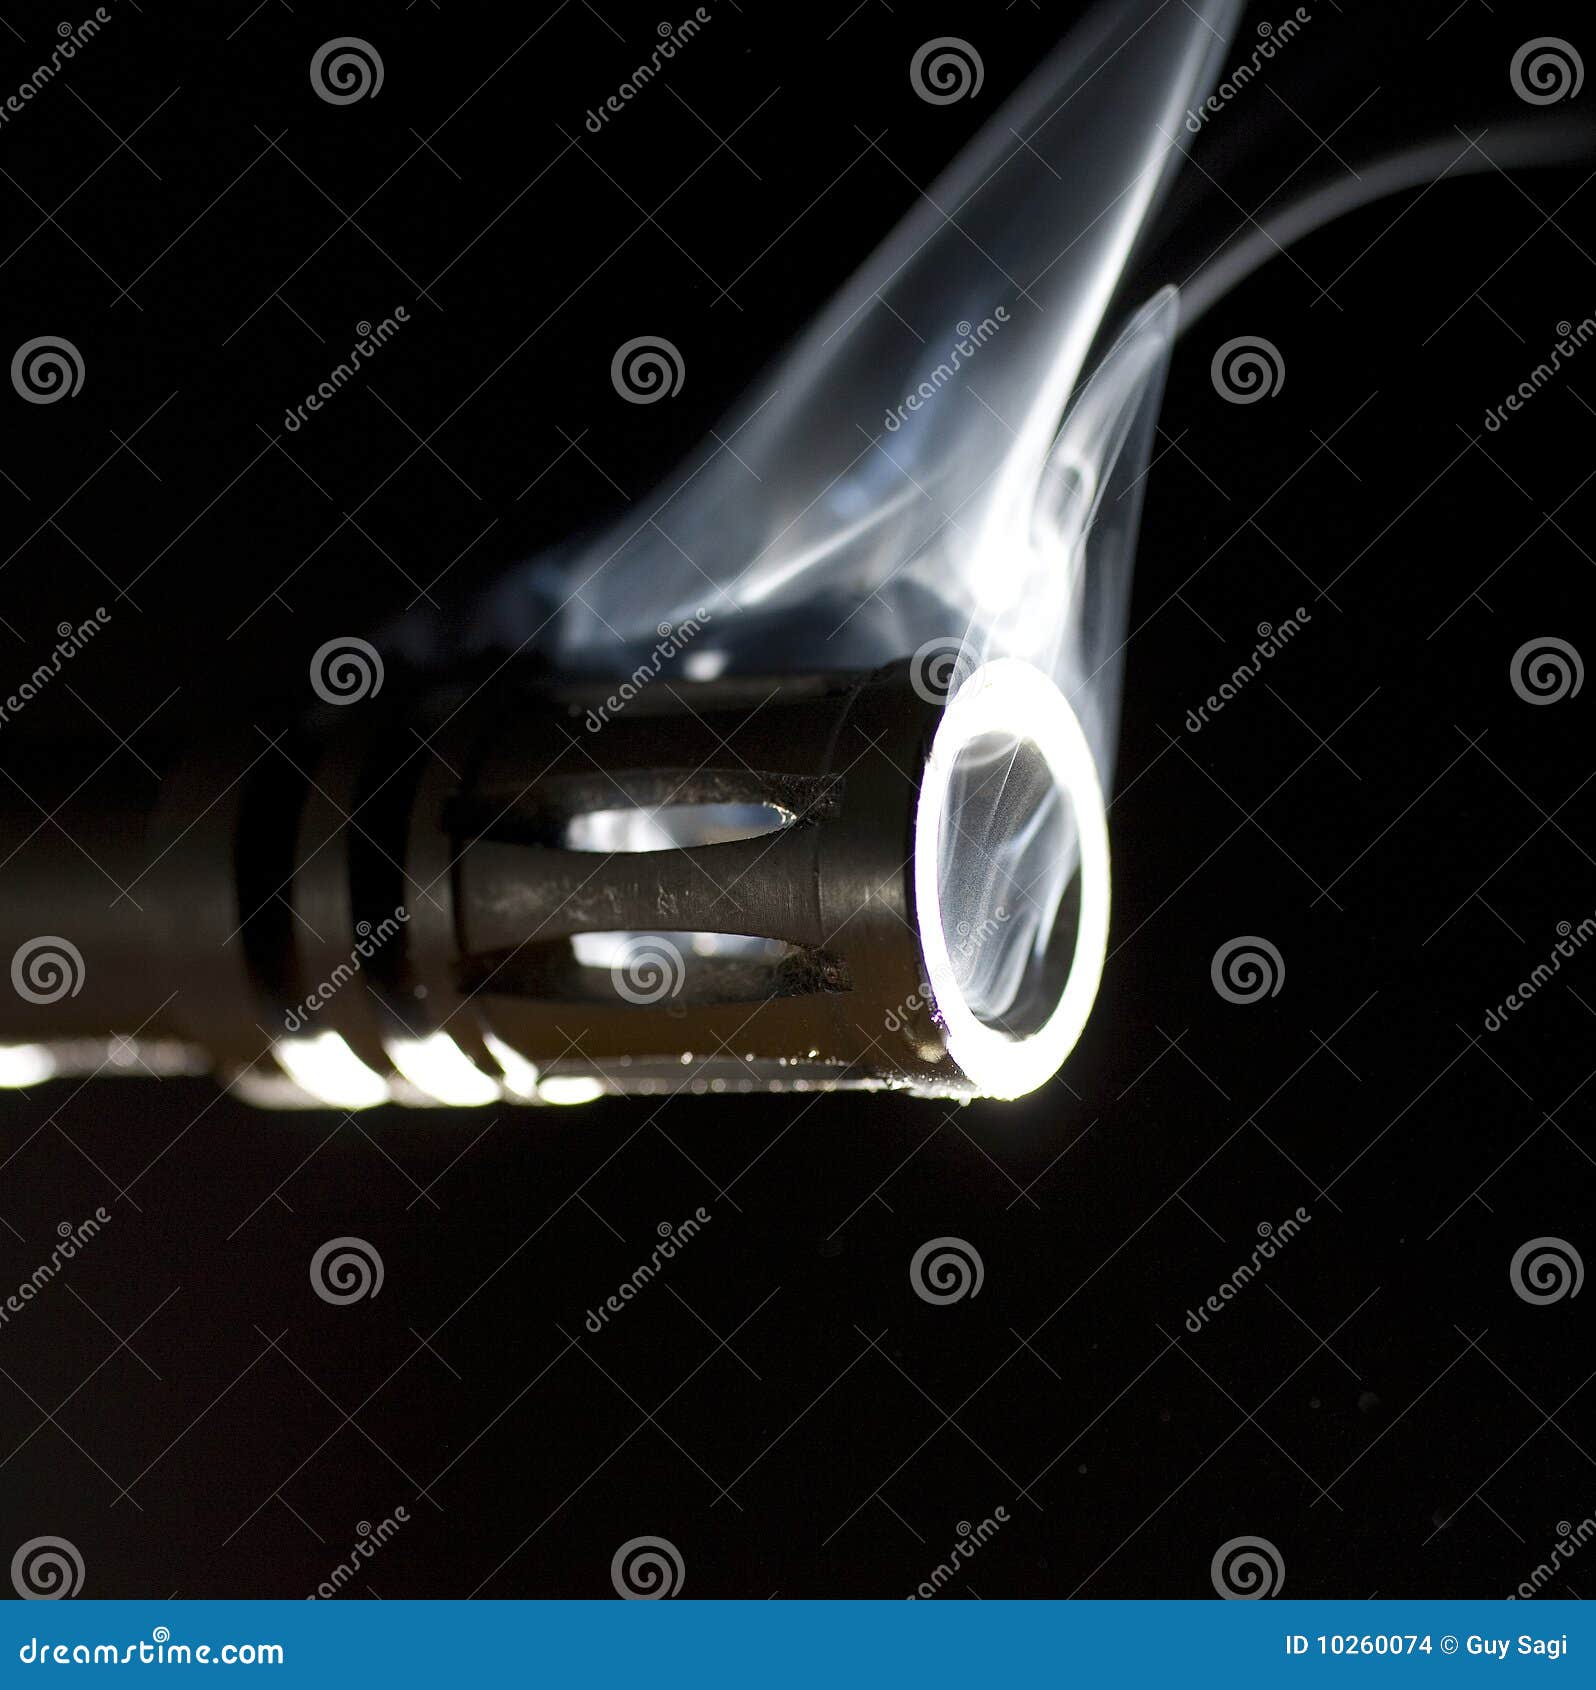 Smoking Stock Images - Image: 10260074